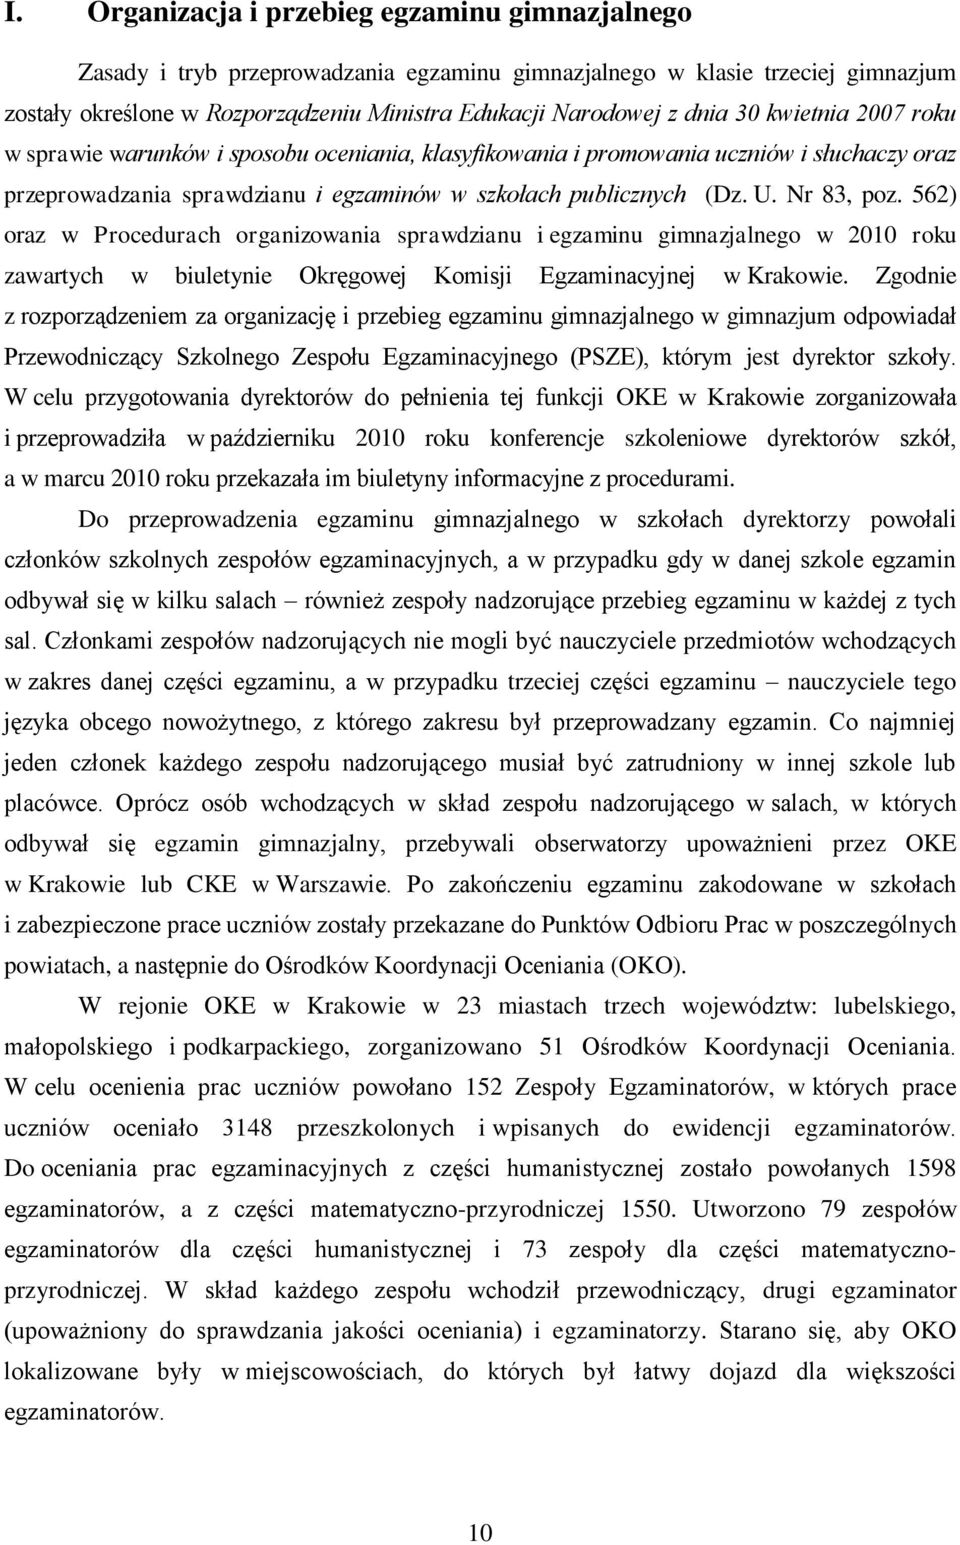 562) oraz w Procedurach organizowania sprawdzianu i egzaminu gimnazjalnego w 2010 roku zawartych w biuletynie Okręgowej Komisji Egzaminacyjnej w Krakowie.